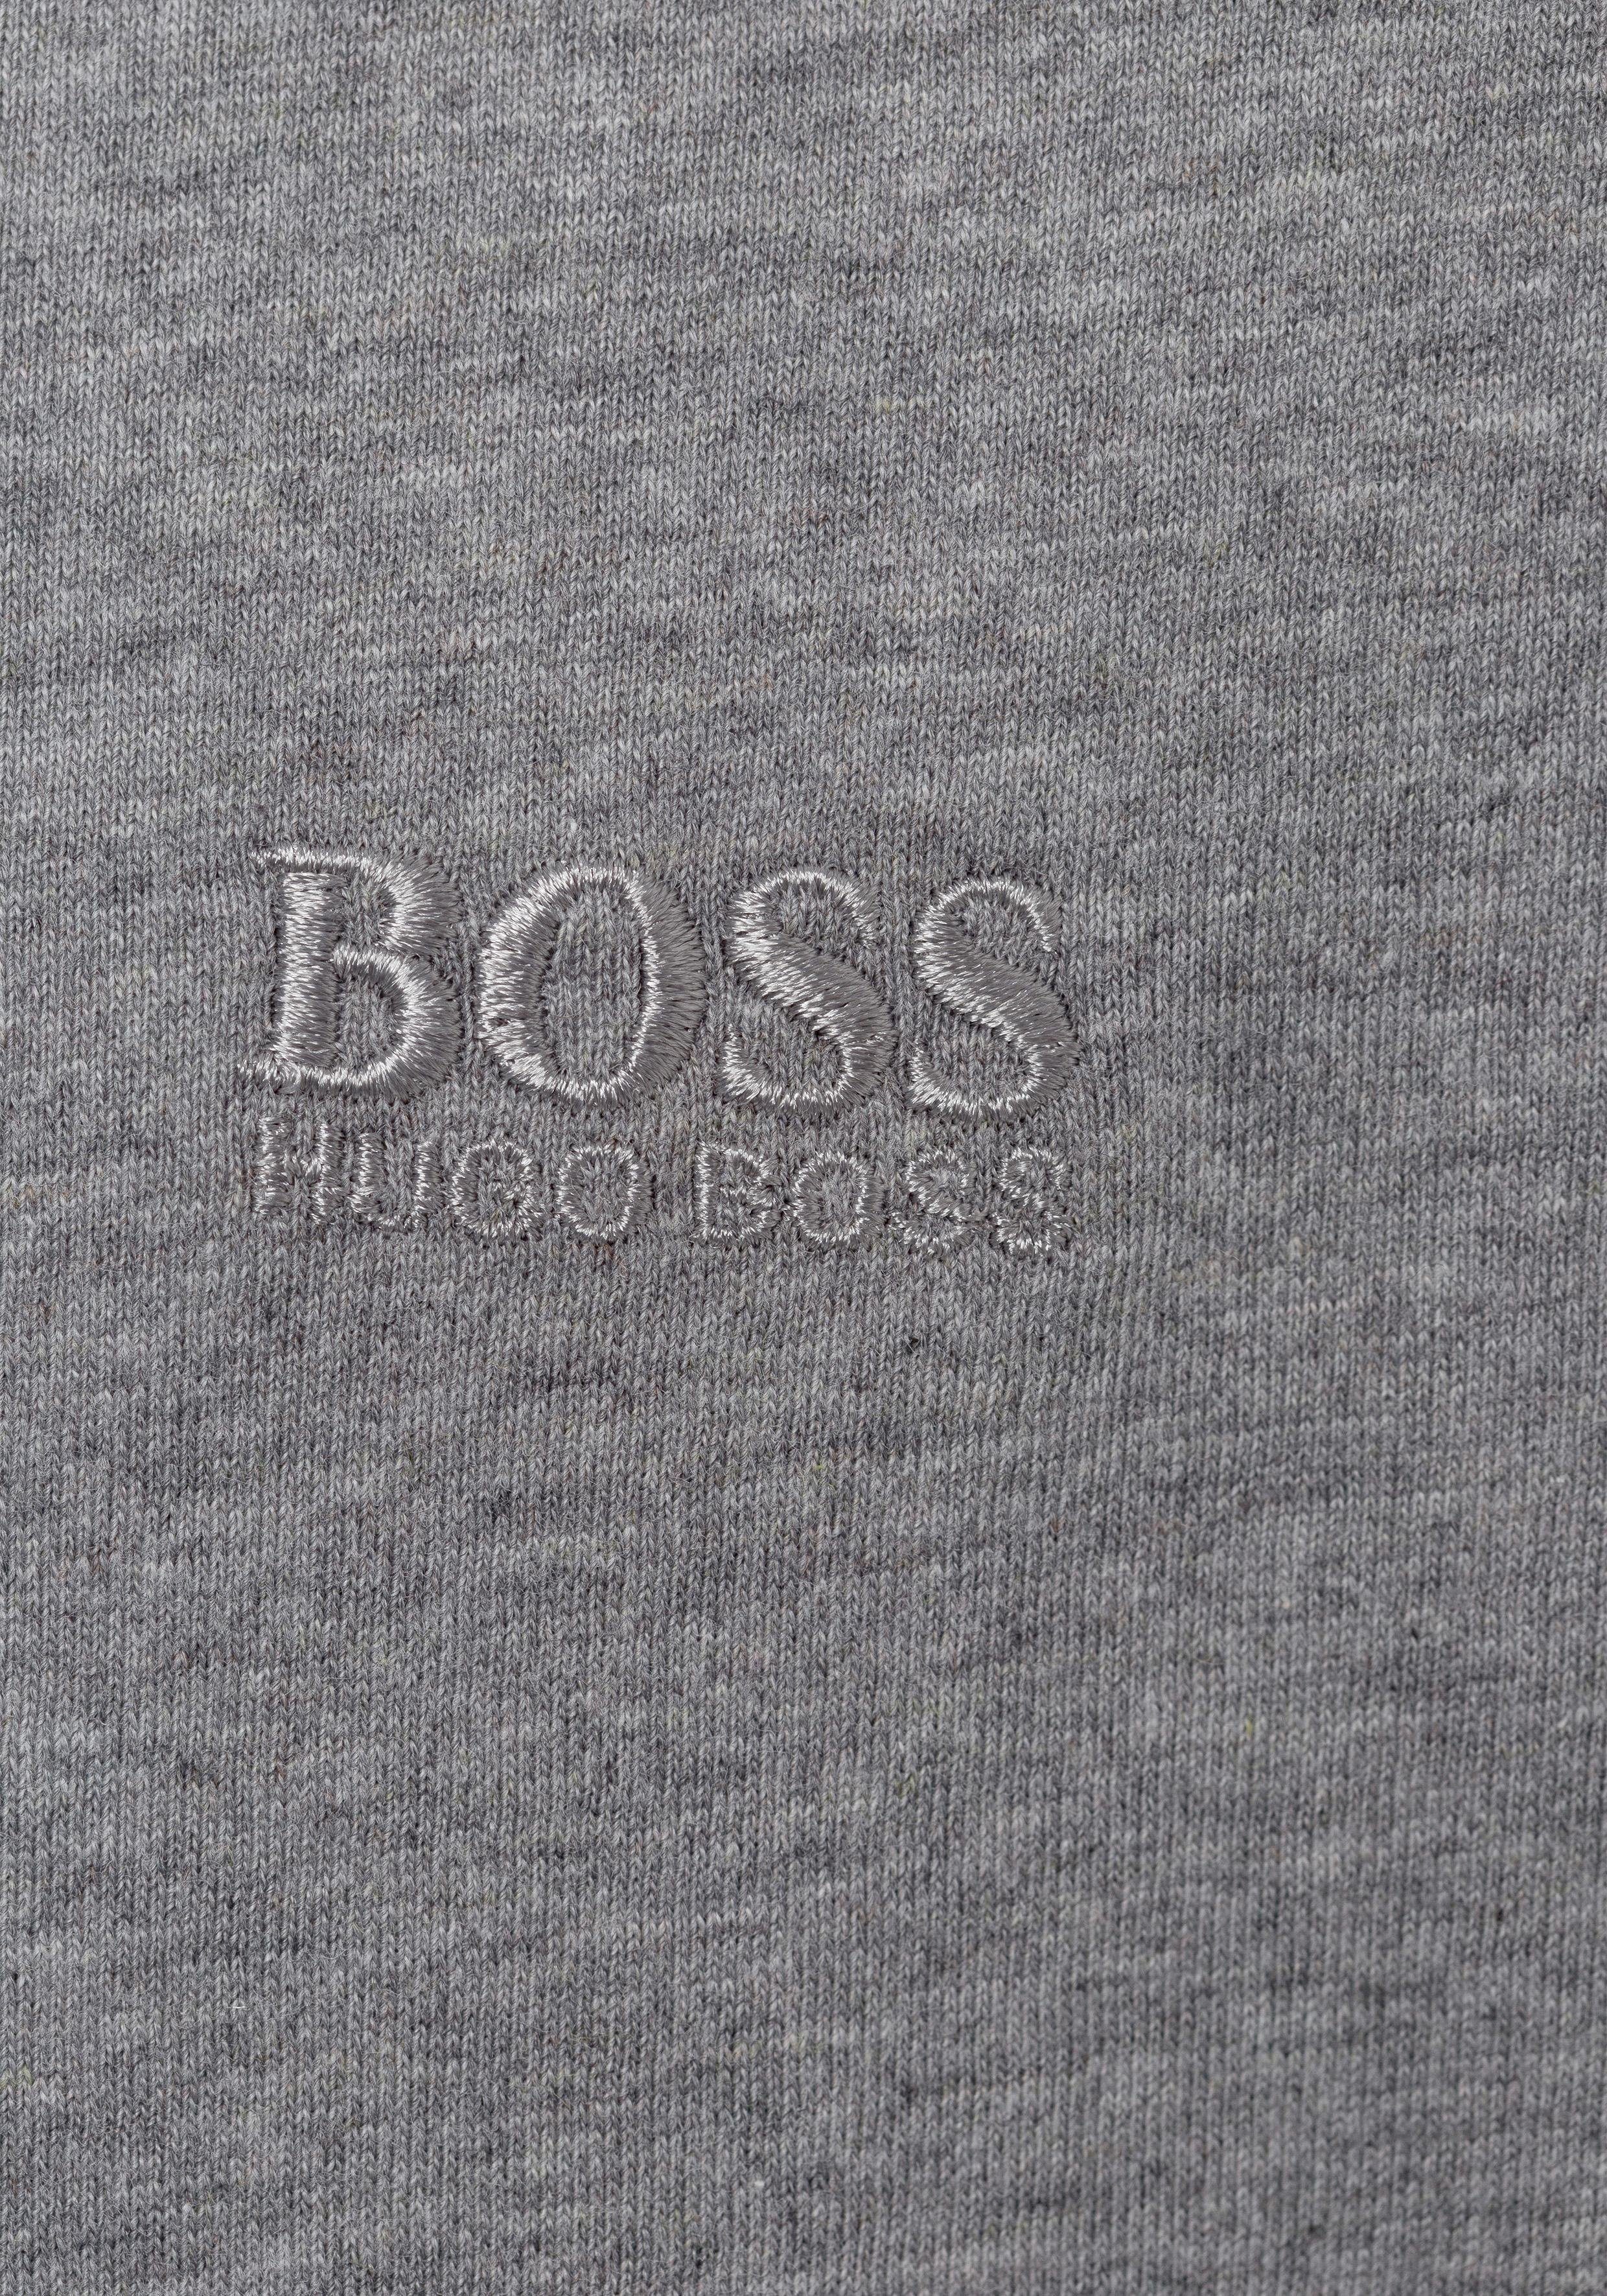 BOSS V-Shirt T-Shirt 3P CO pre-pack, grau-meliert, assorted VN (Packung) schwarz